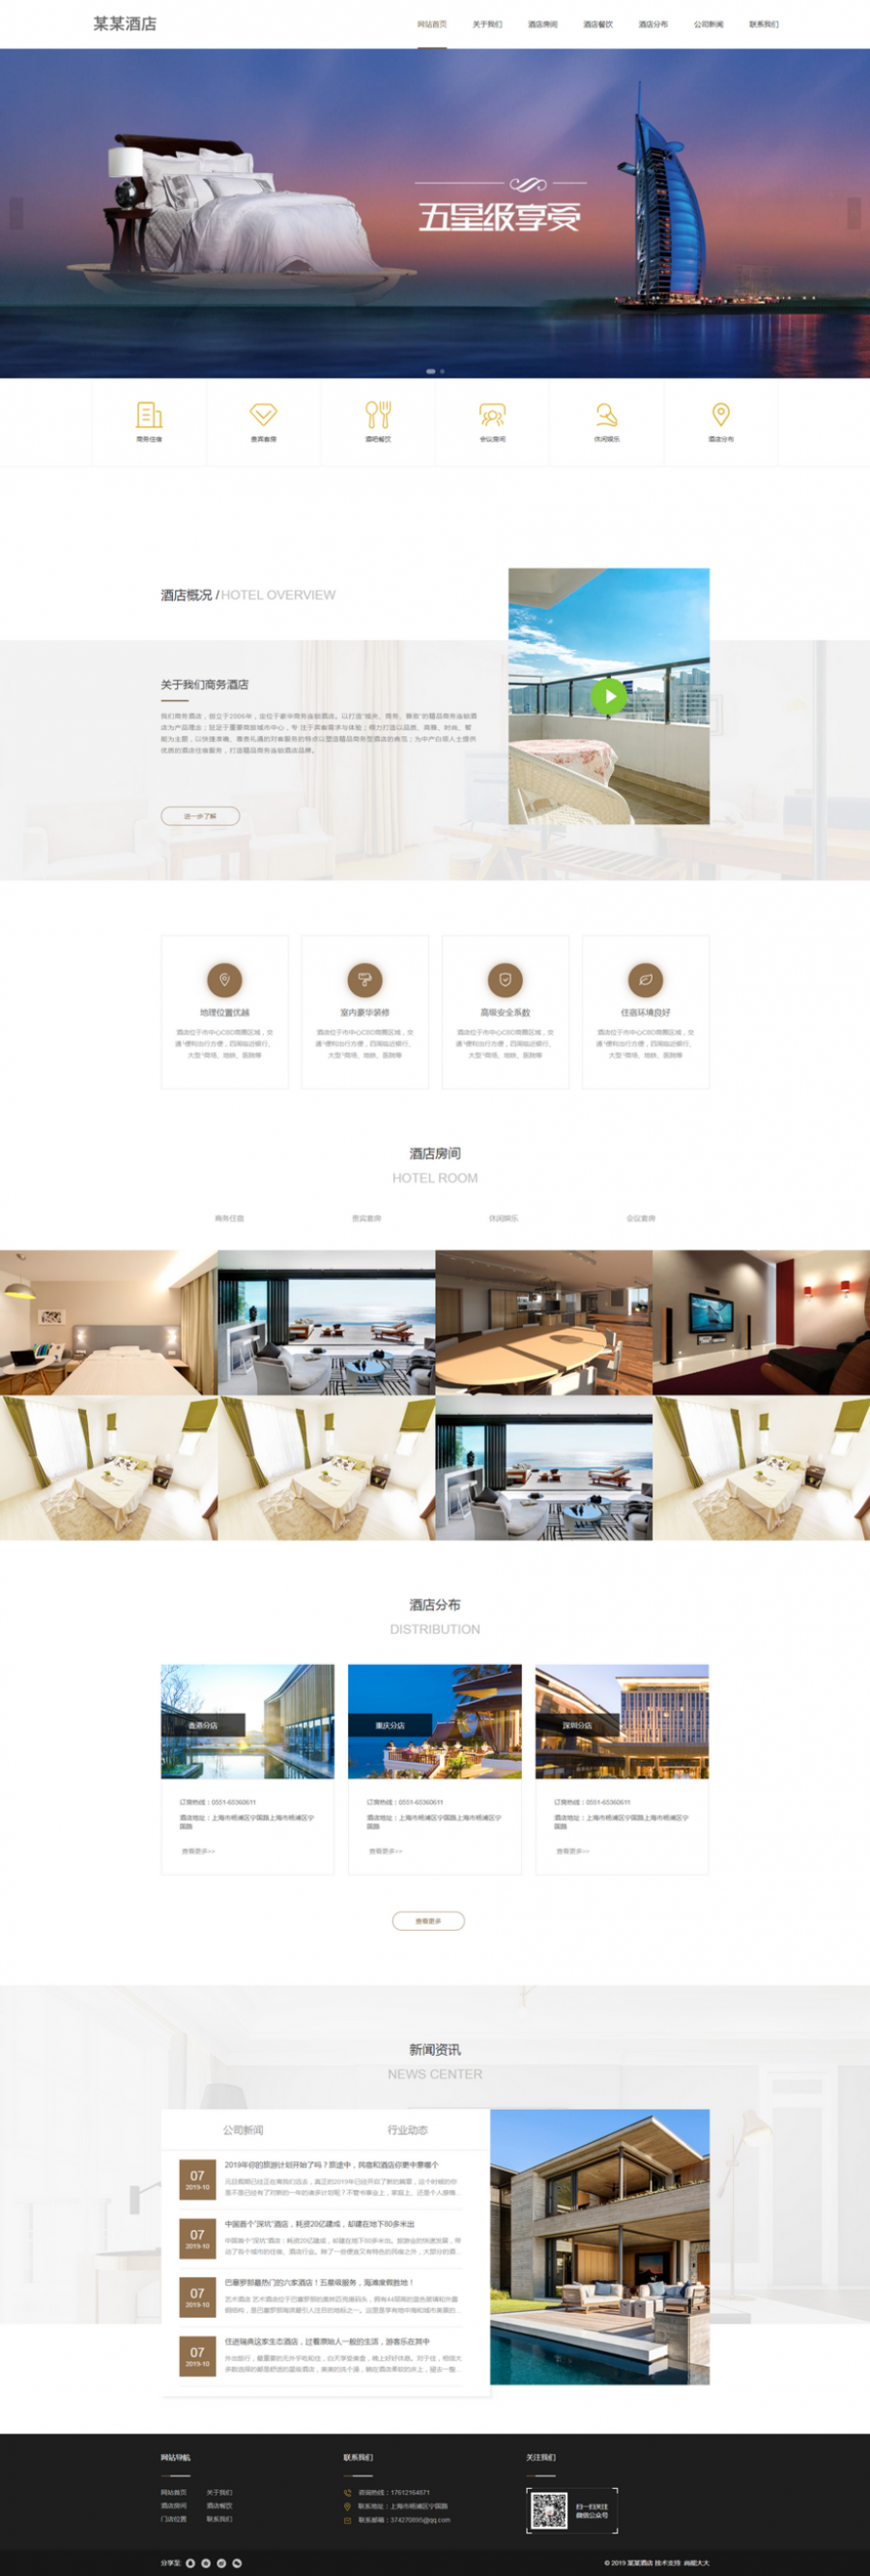 高端大气响应式的酒店展示网站html模板封面图